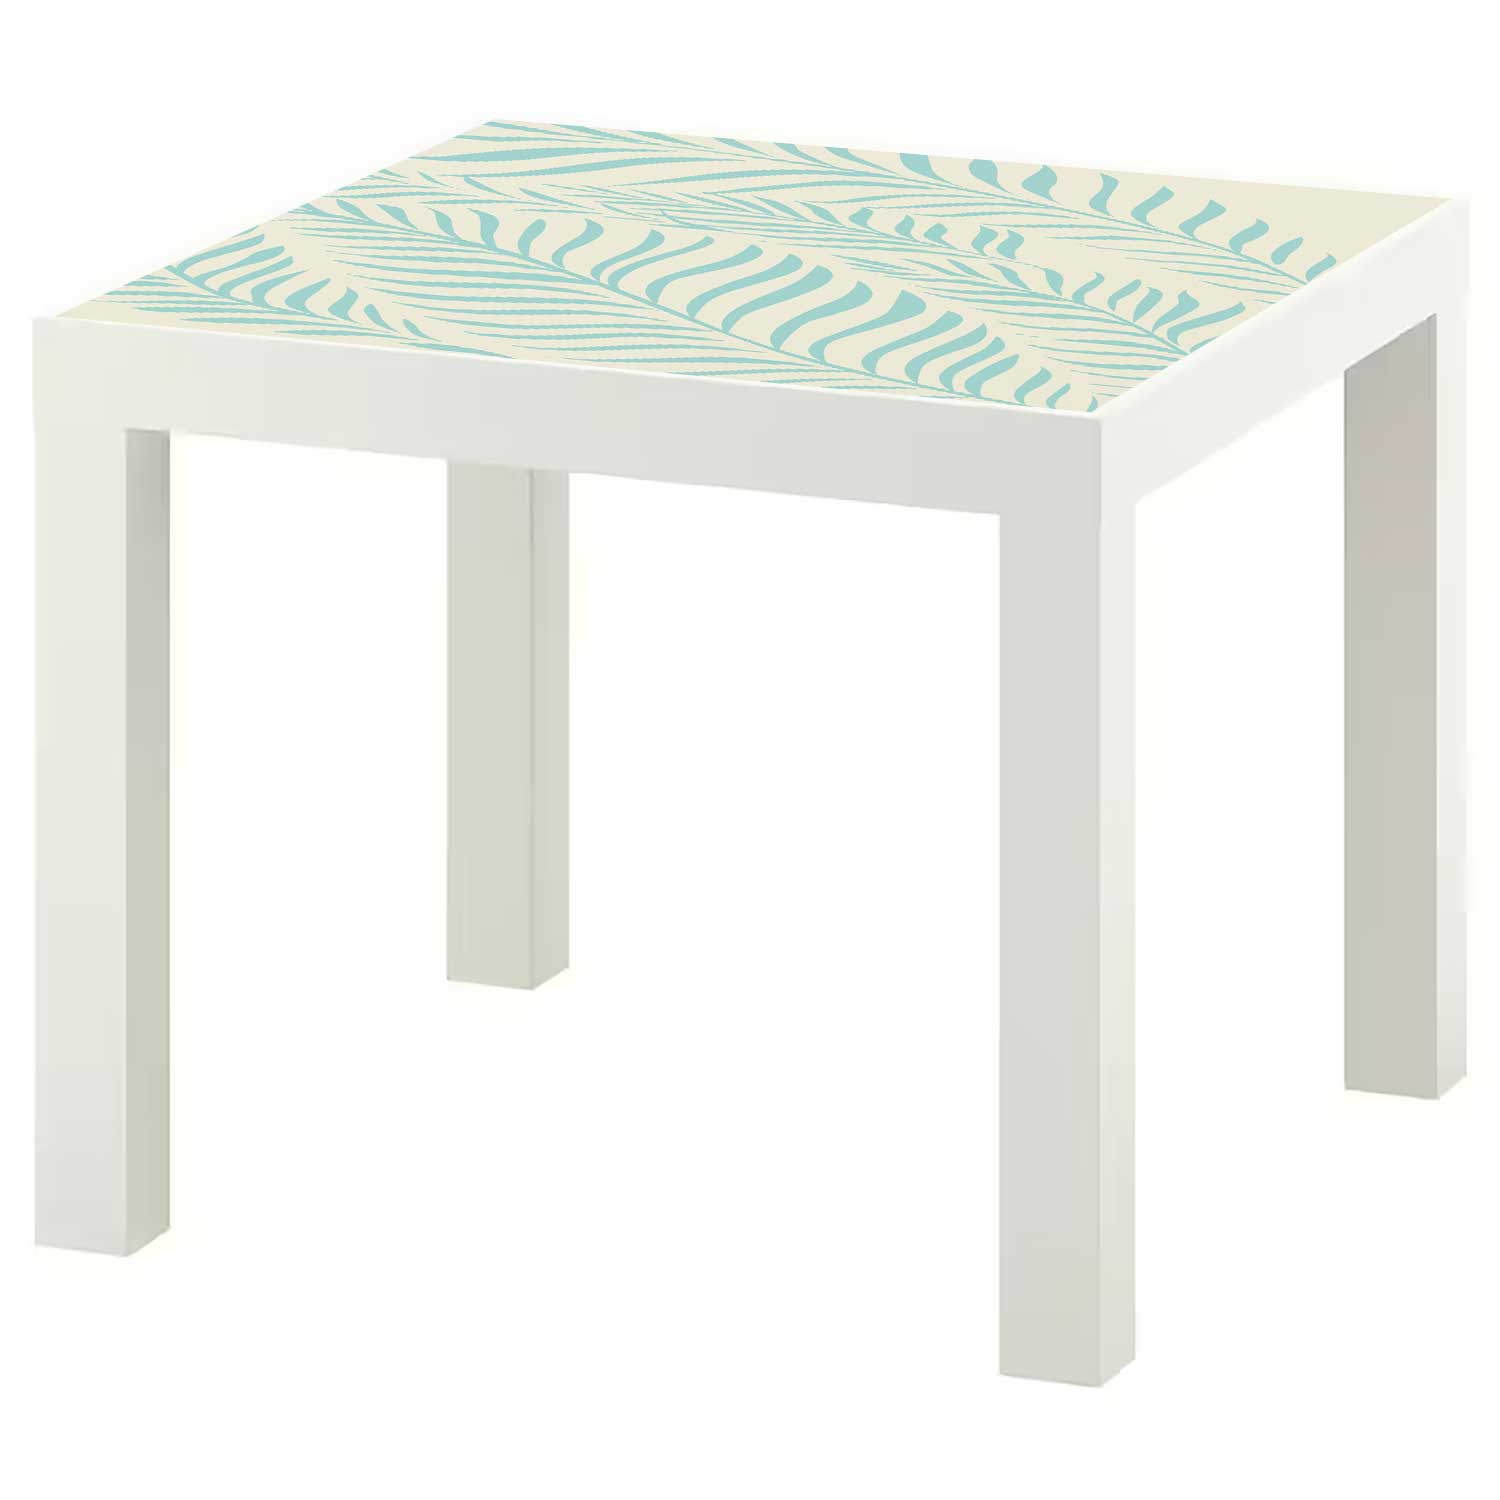 Möbelfolie für IKEA Lack Tisch 55x55 cm 'Farn'